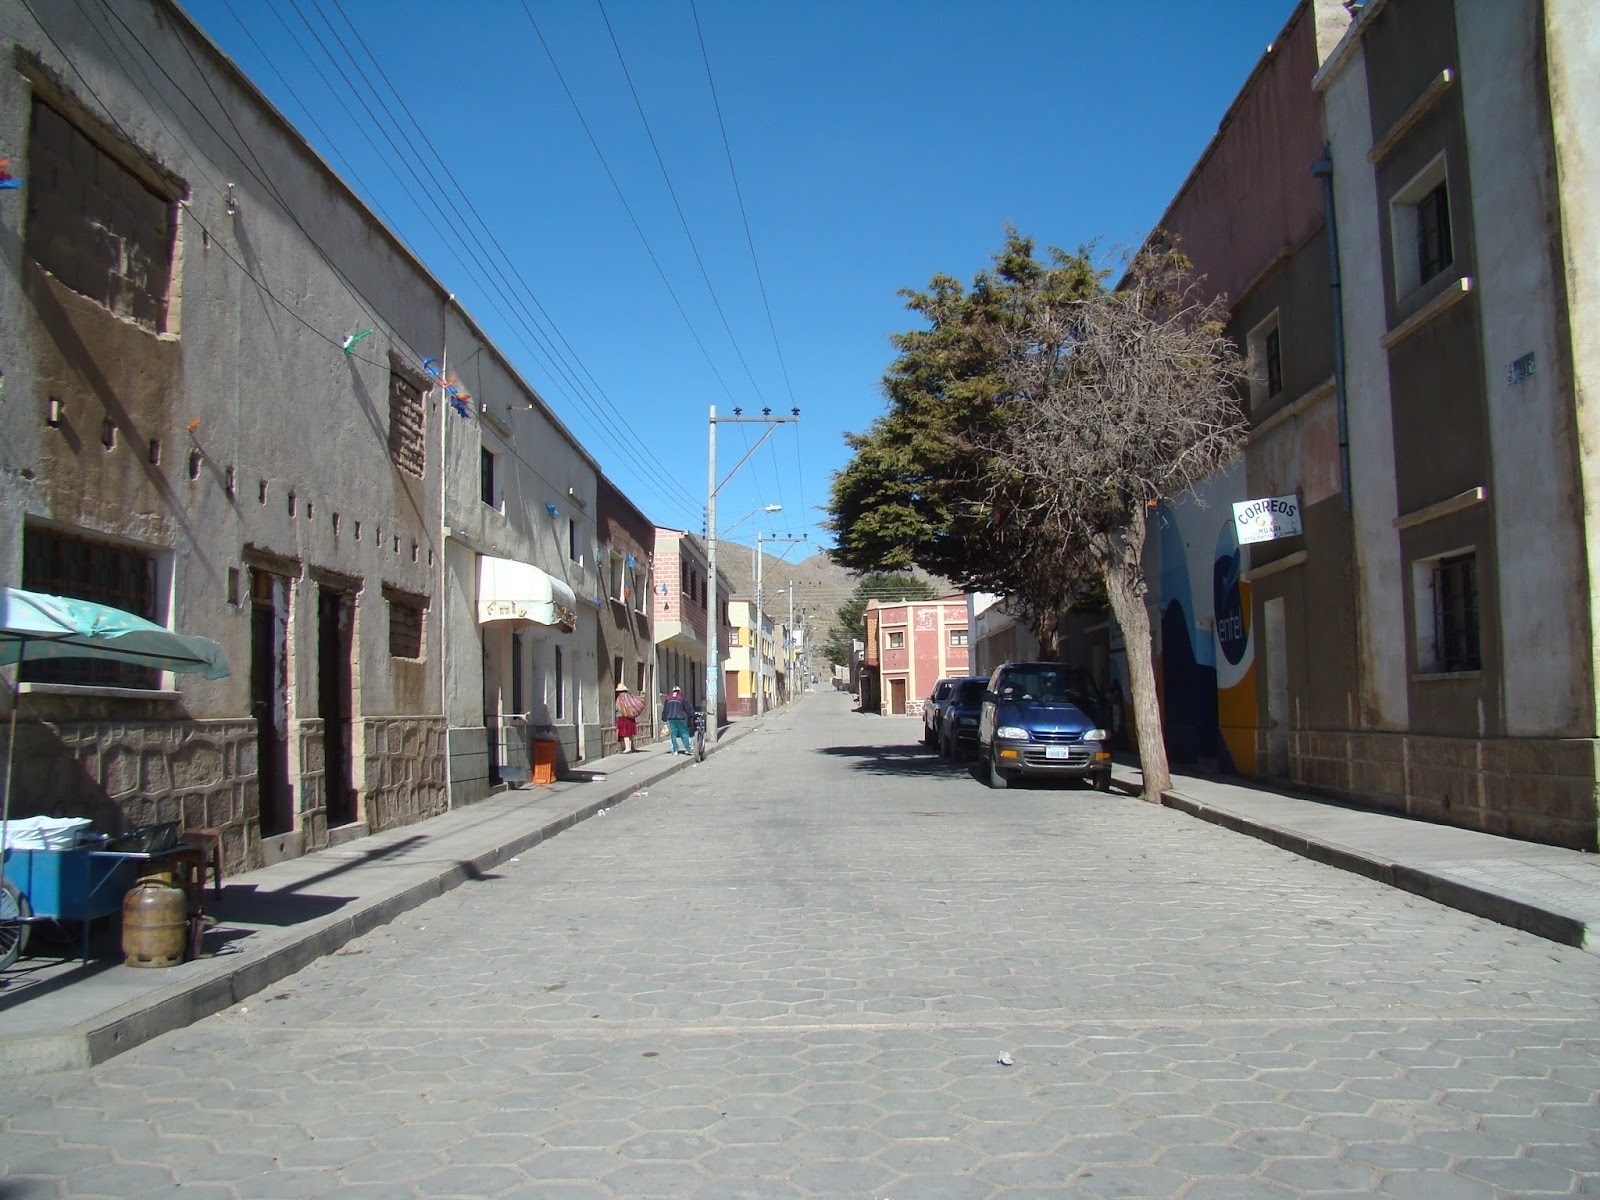 Ruas de Oruro, maior cidade no trajeto at La Paz.